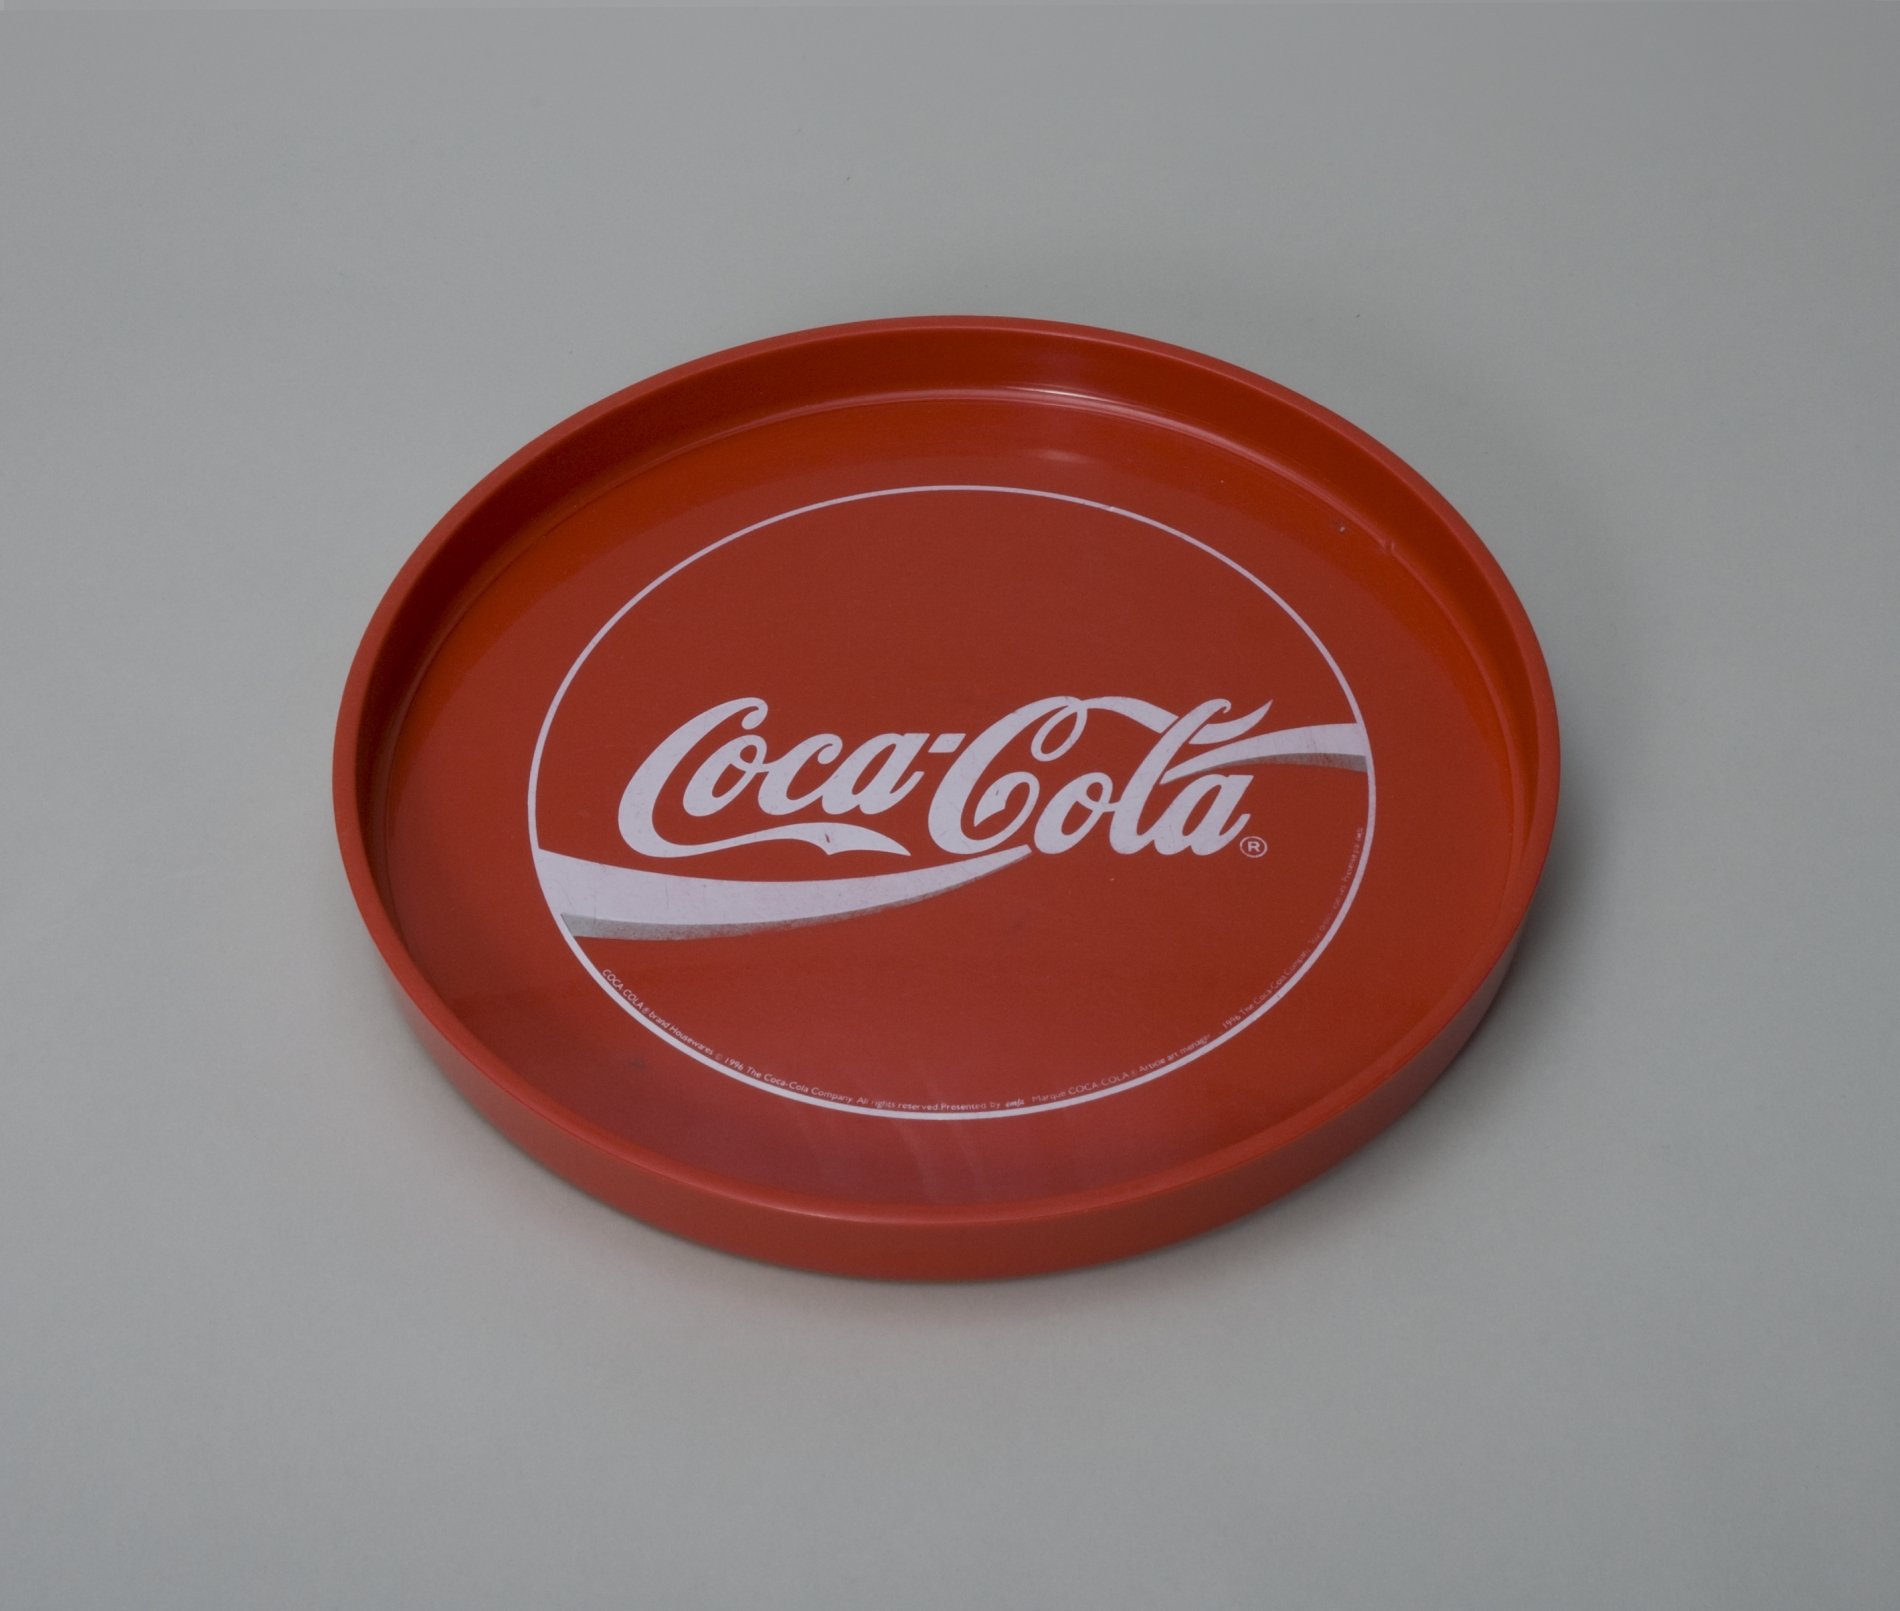 Tablett "Coca-Cola" (Stiftung Domäne Dahlem - Landgut und Museum, Weiternutzung nur mit Genehmigung des Museums CC BY-NC-SA)